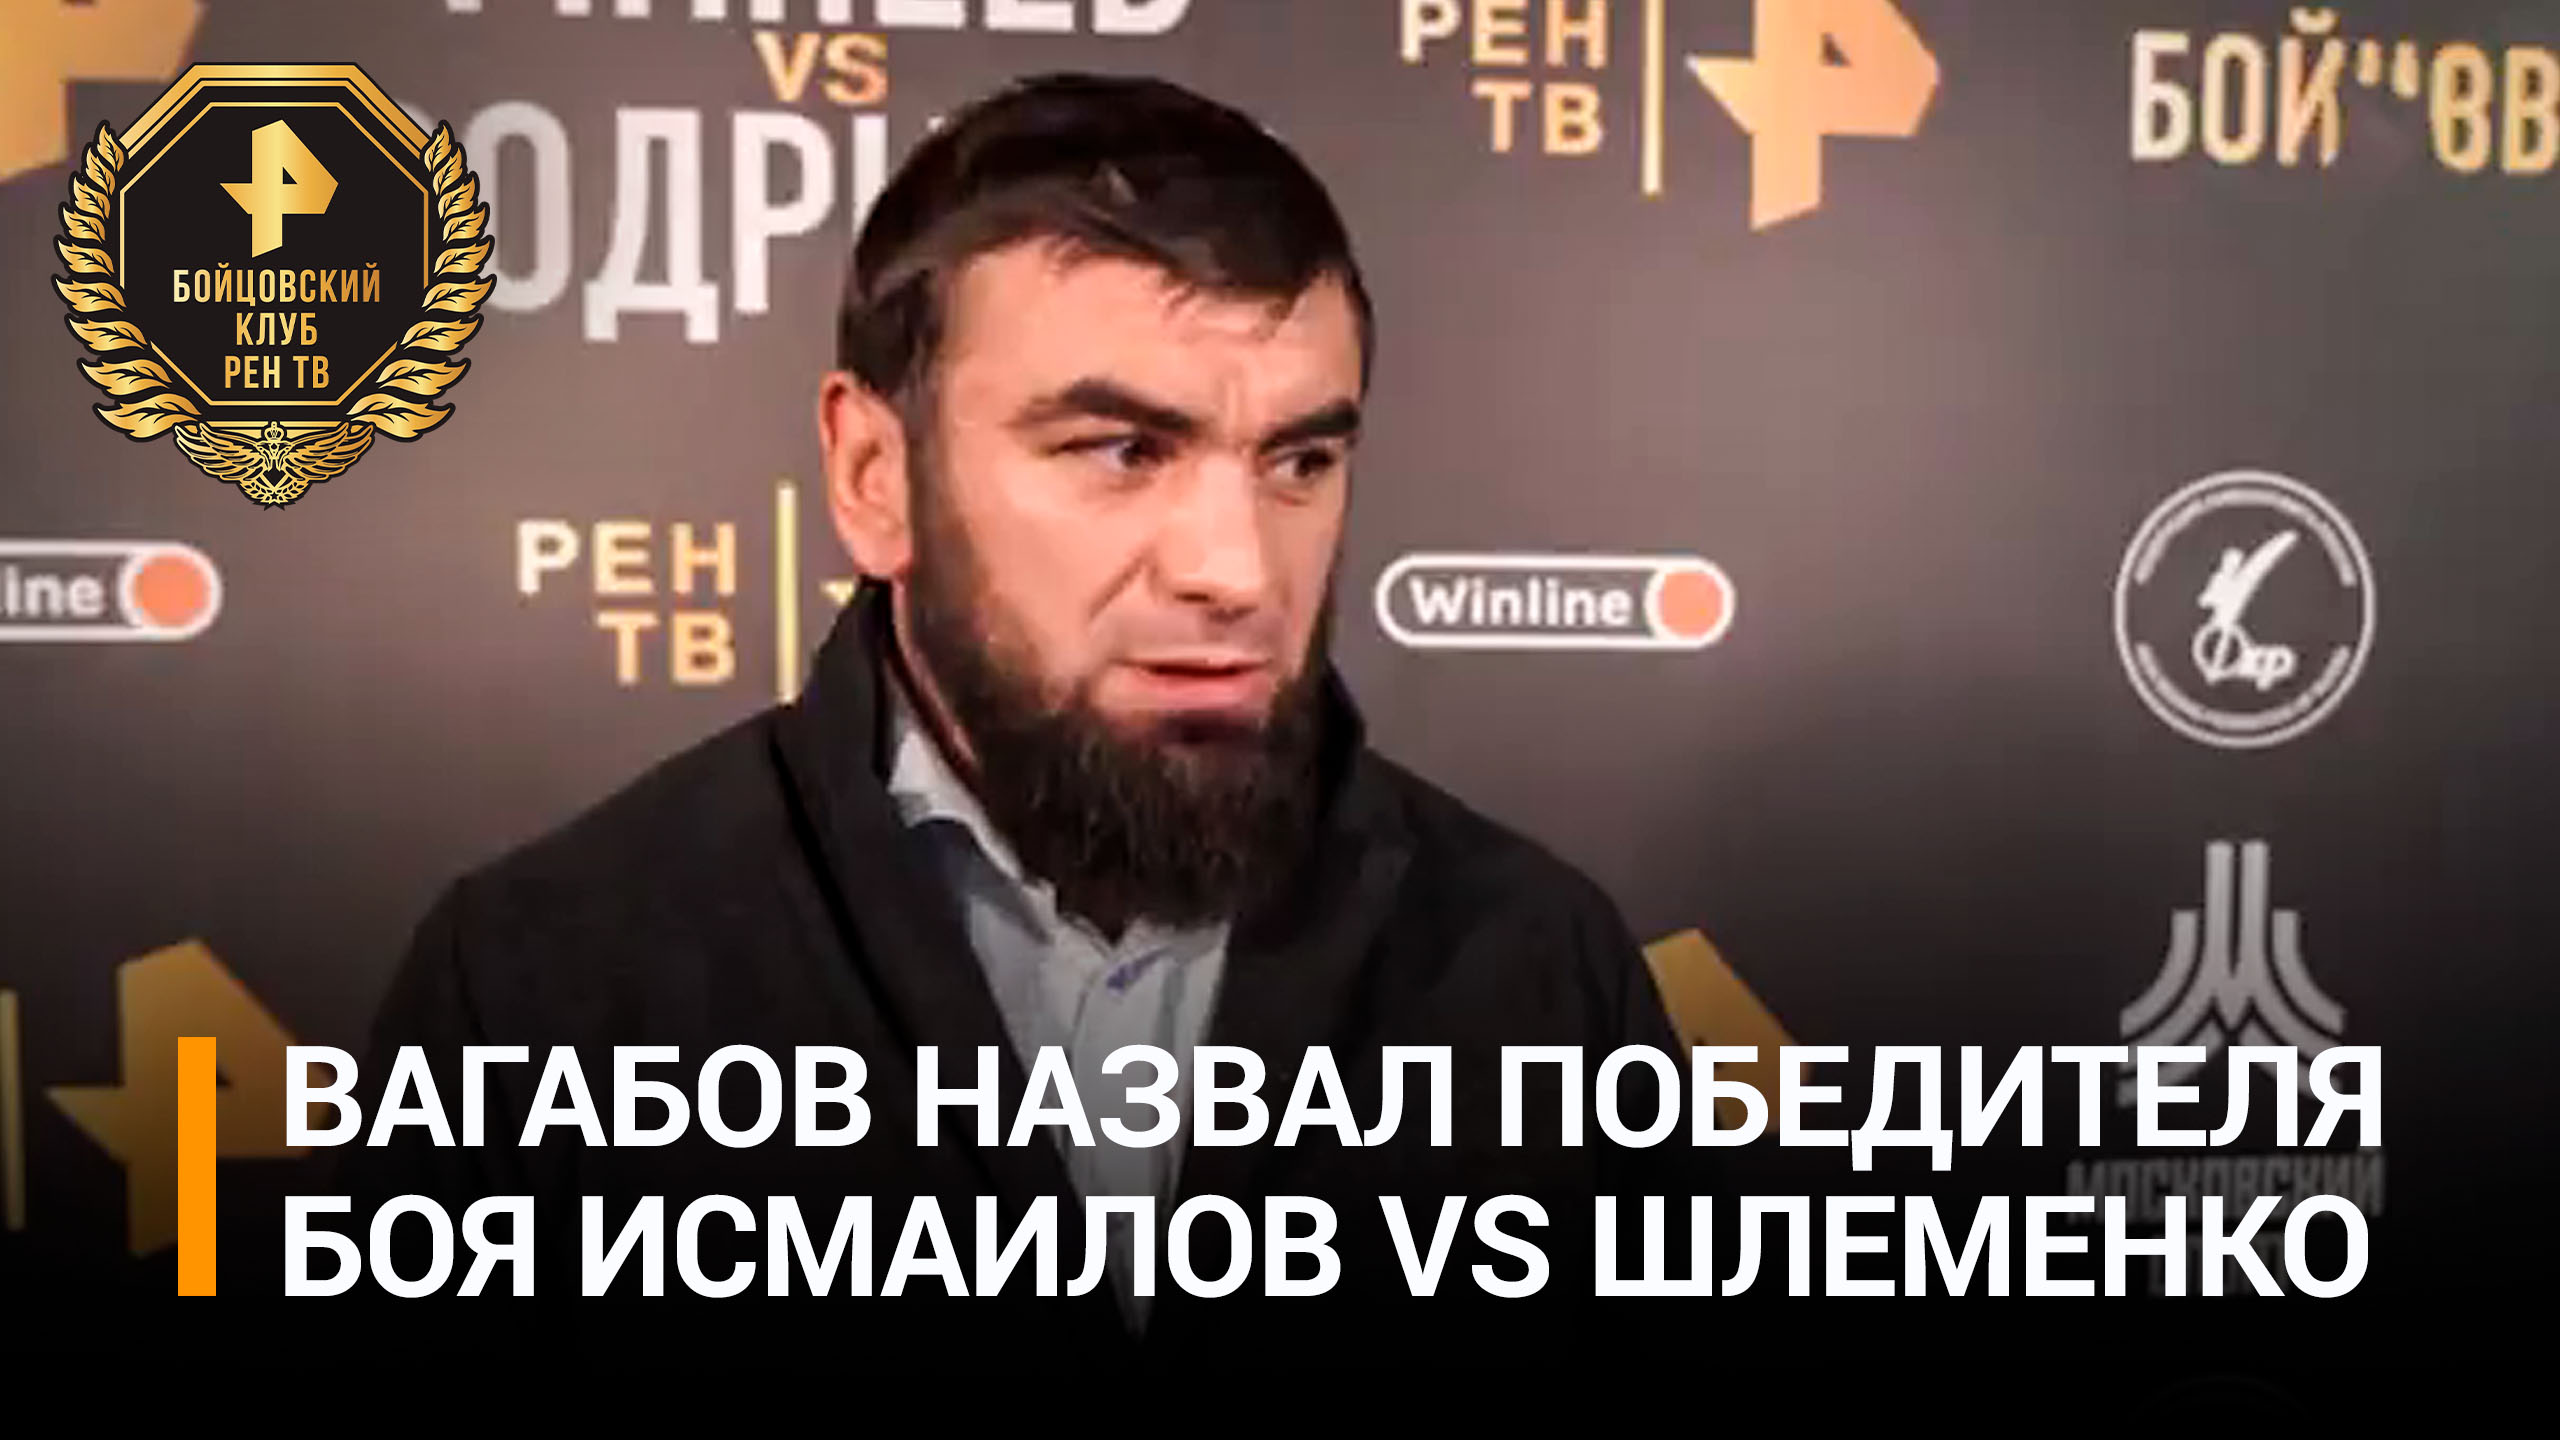 Вагабов дал прогноз на исход боя Шлеменко и Исмаилова: "Он на две головы выше" / Бойцовский клуб